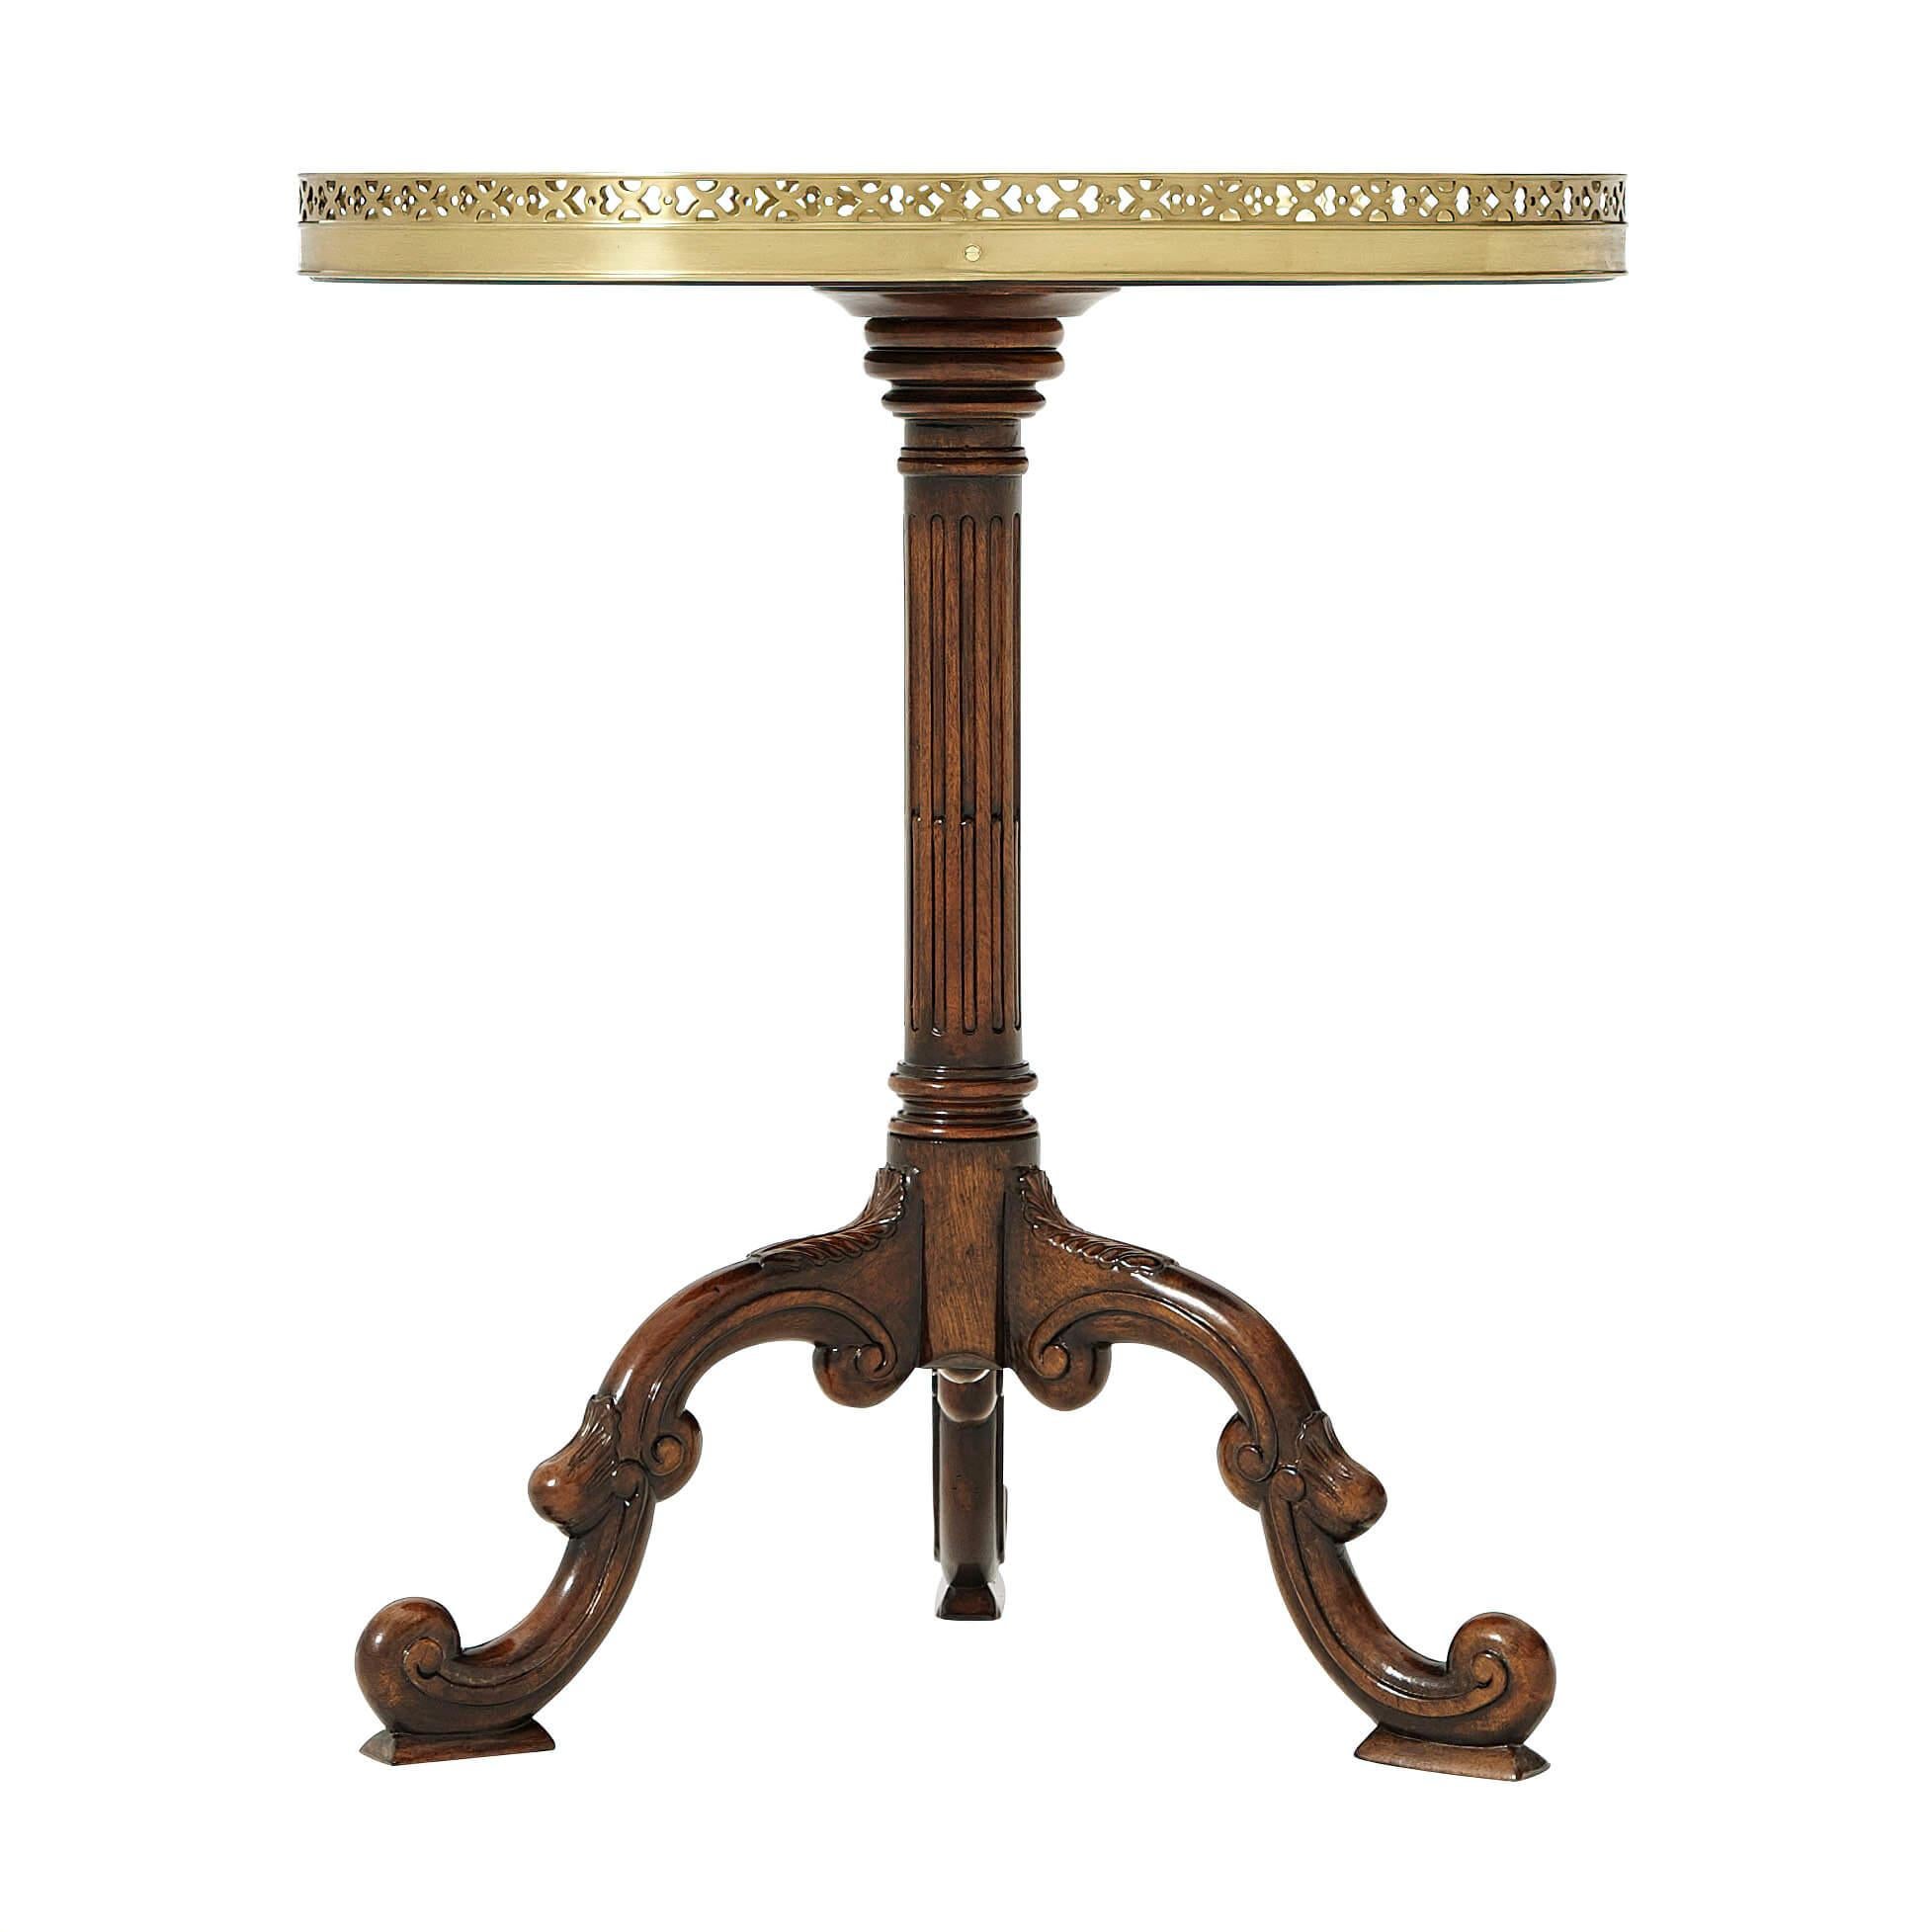 Table d'appoint ovale en acajou et loupe d'acajou, avec une galerie en laiton percée et une colonne cannelée, sur des pieds en 